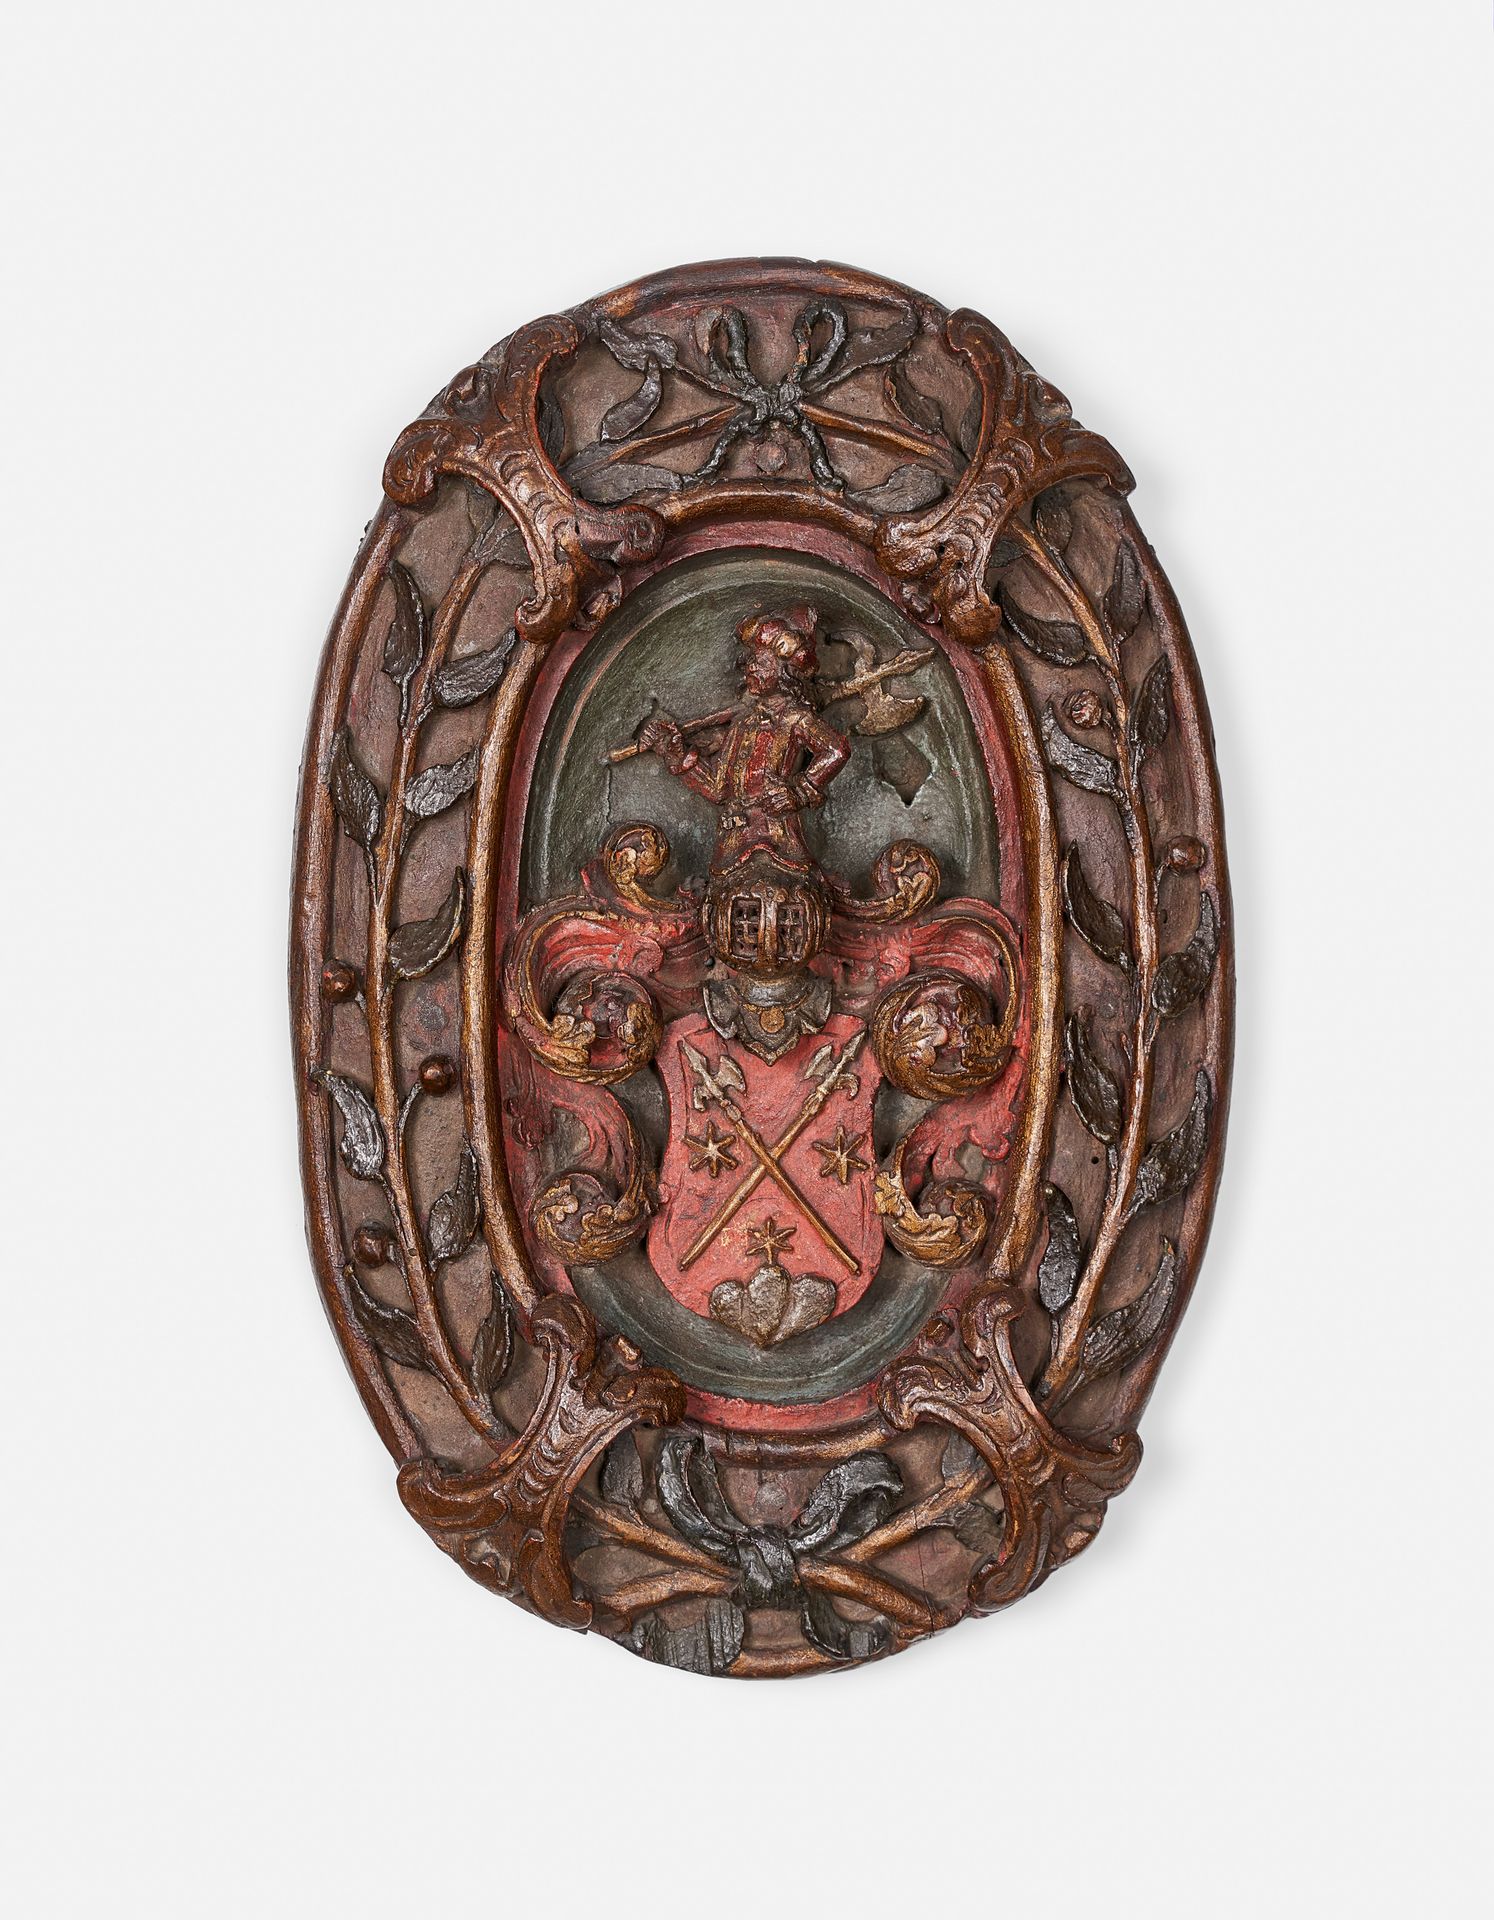 Null SCUDO INTAGLIATO

Fine del XVI secolo 

In legno scolpito ad altorilievo, l&hellip;